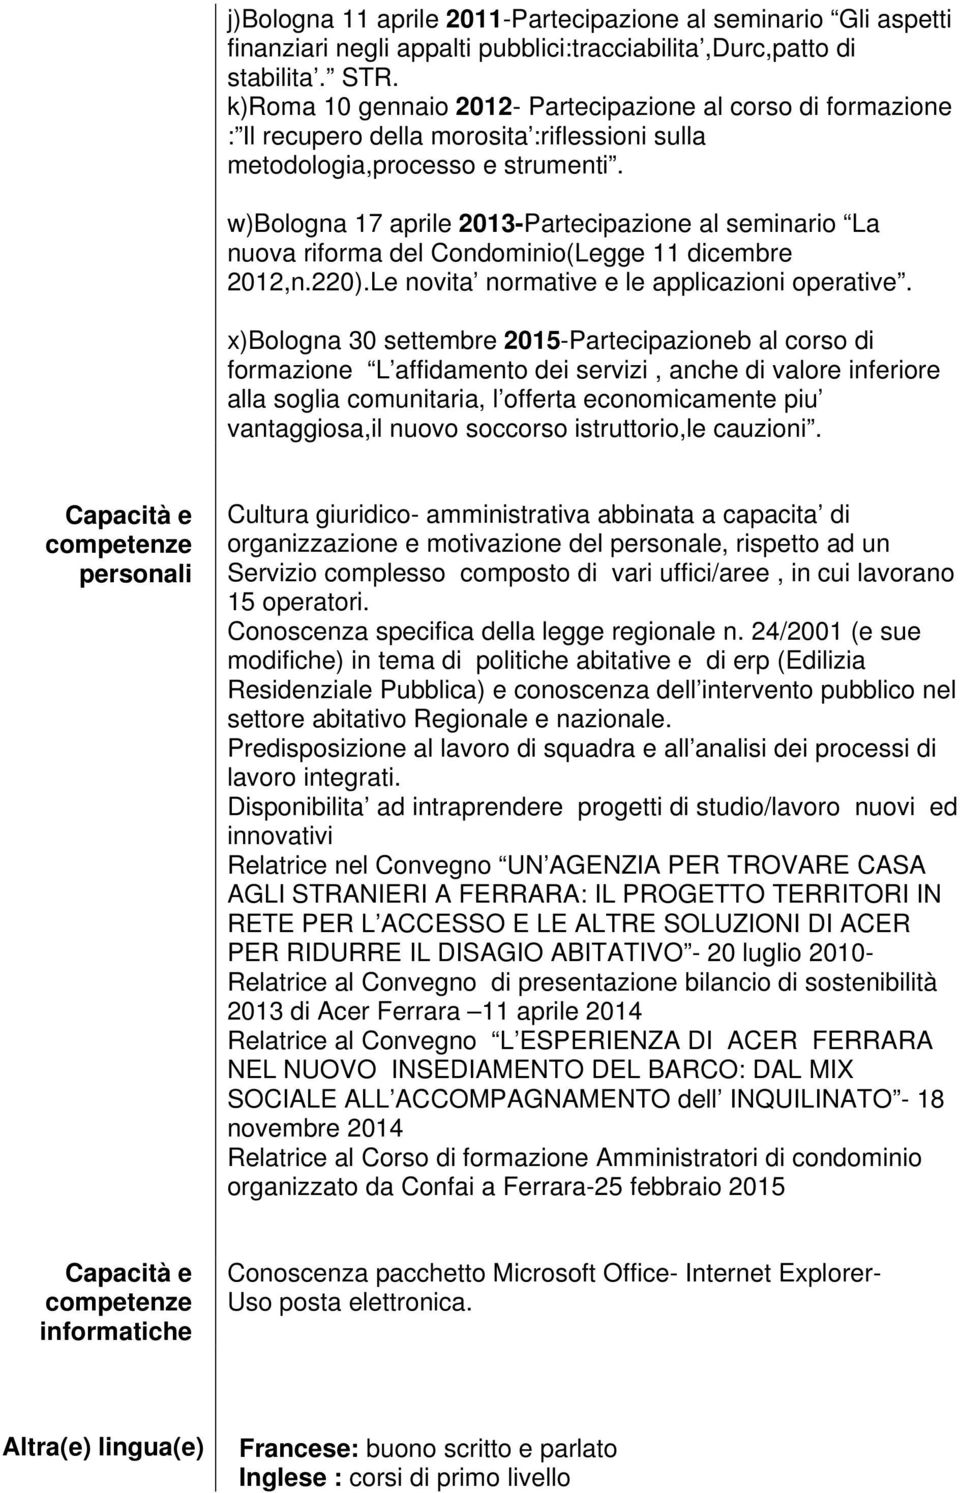 w)bologna 17 aprile 2013-Partecipazione al seminario La nuova riforma del Condominio(Legge 11 dicembre 2012,n.220).Le novita normative e le applicazioni operative.